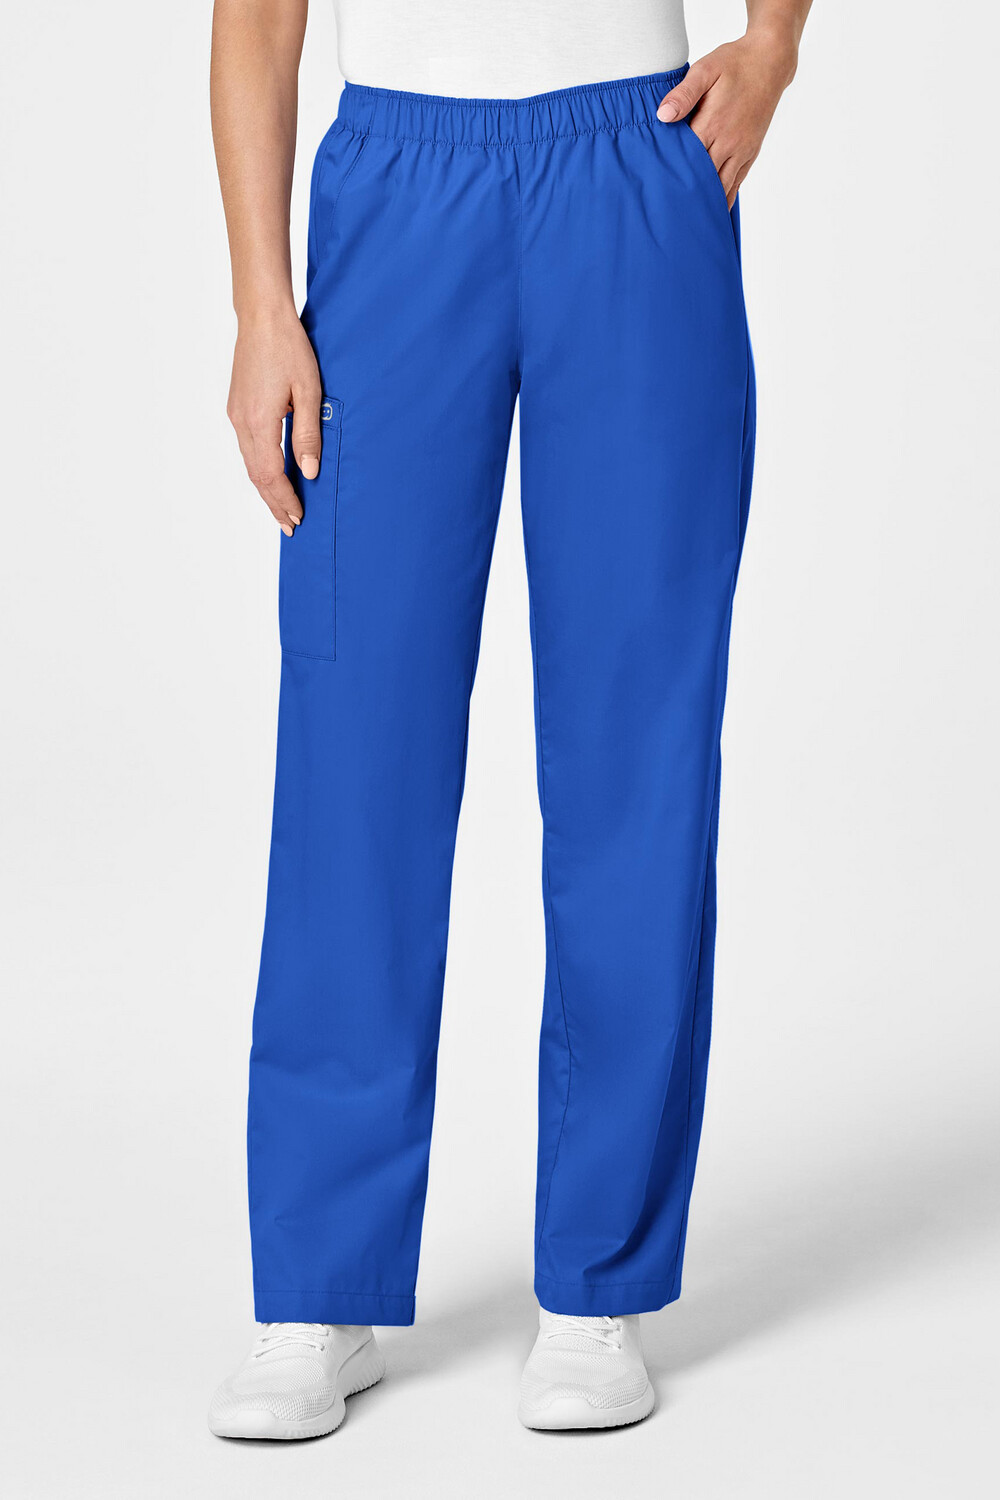 Pantalone donna 501 royal blue